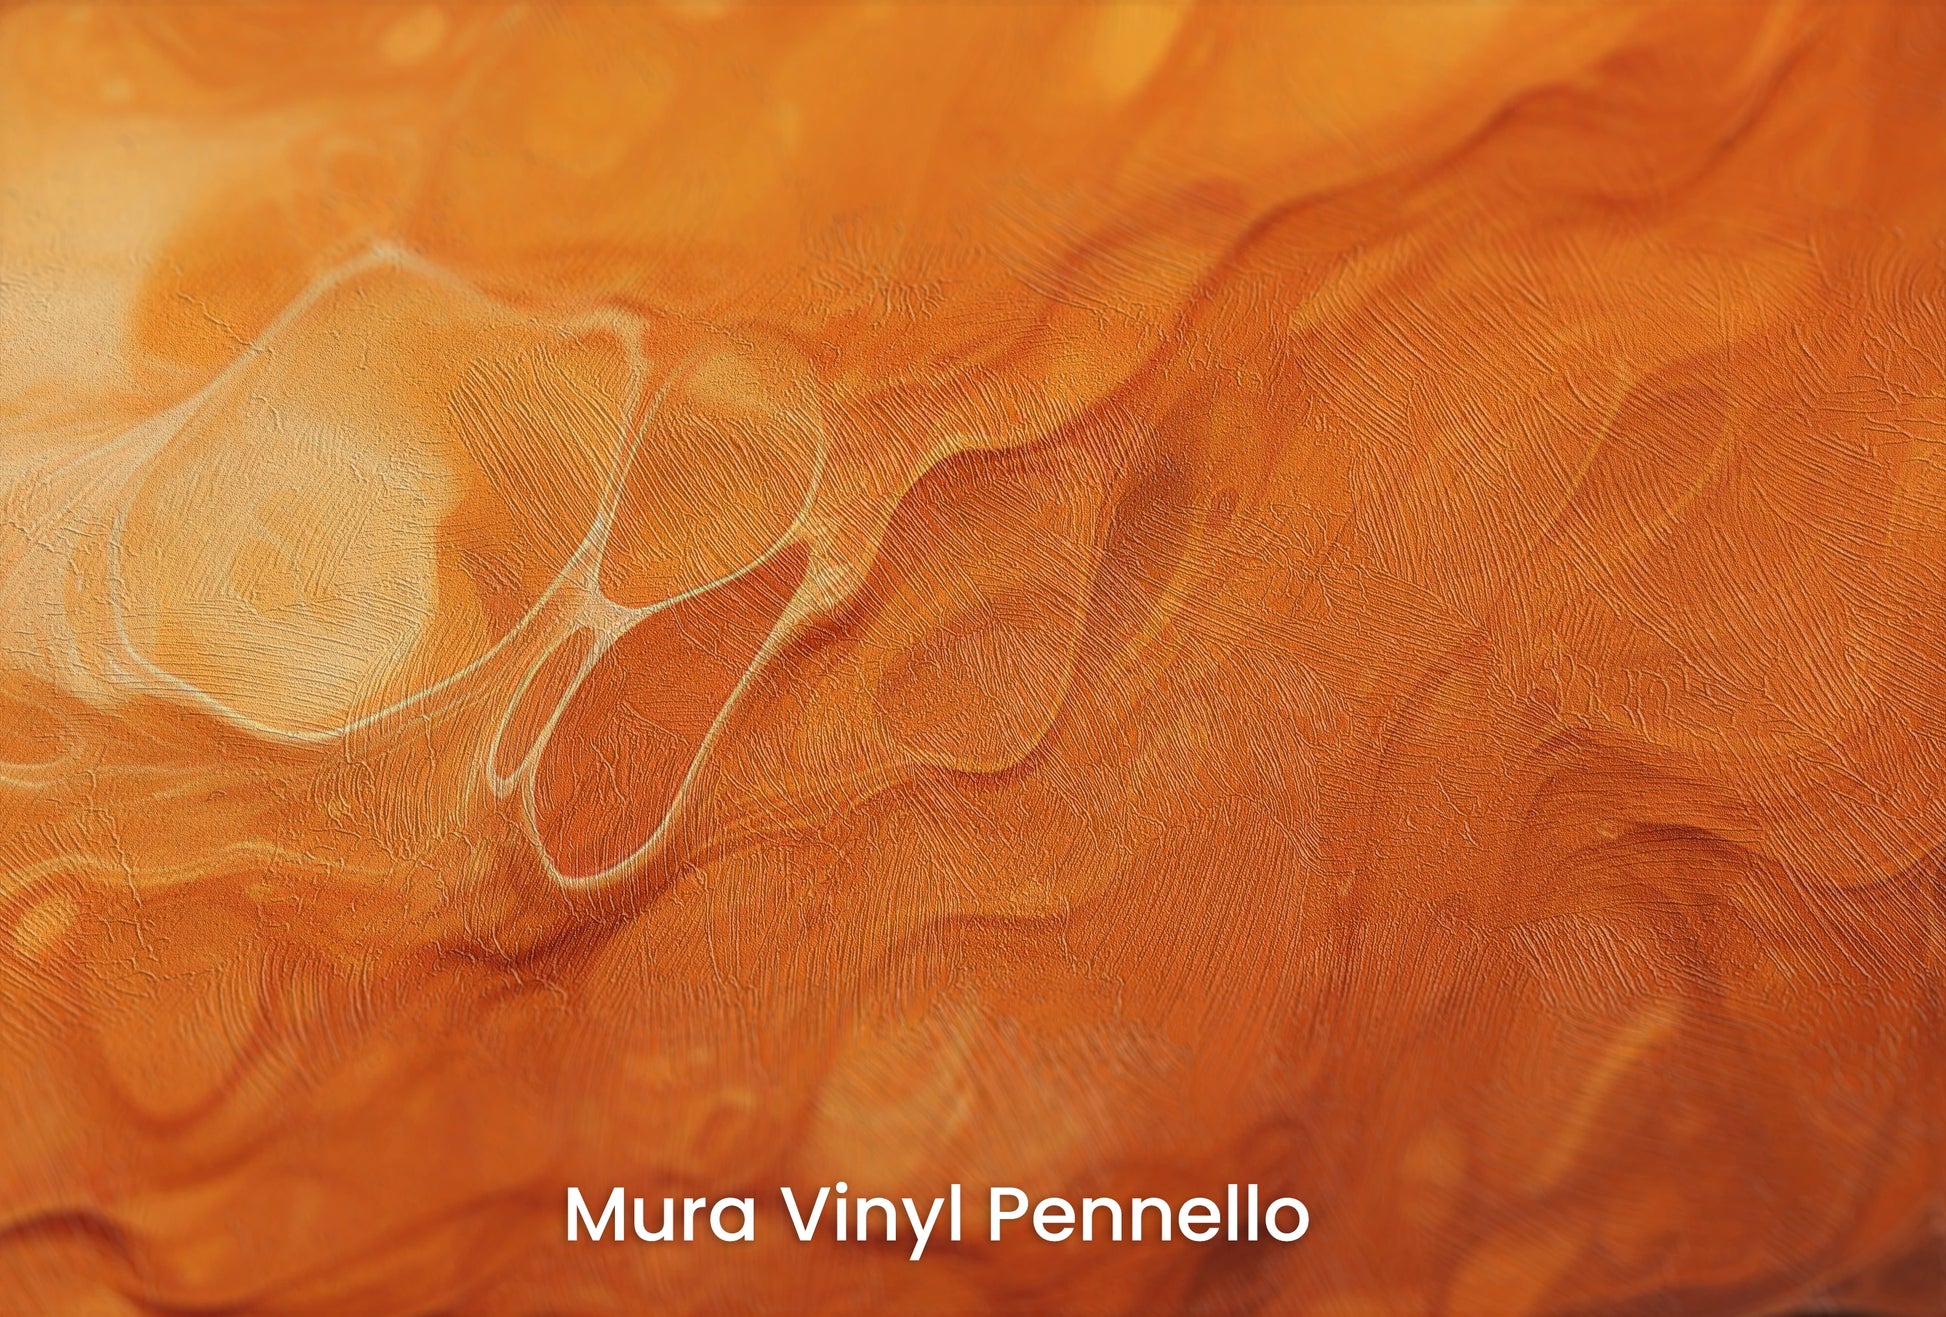 Zbliżenie na artystyczną fototapetę o nazwie Mercurial Craters na podłożu Mura Vinyl Pennello - faktura pociągnięć pędzla malarskiego.